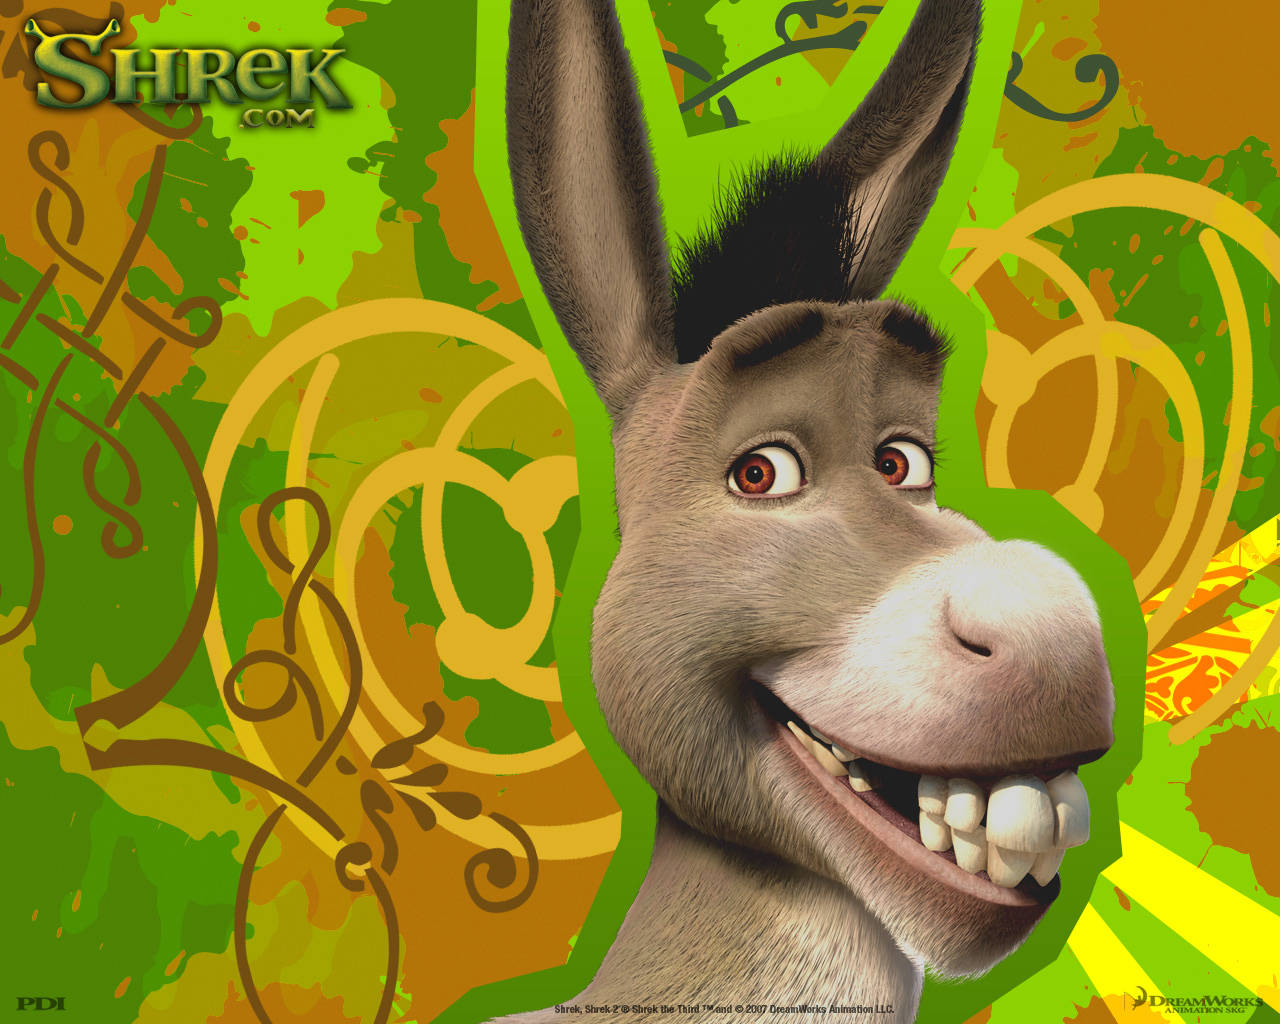 Smiling Donkey From Shrek